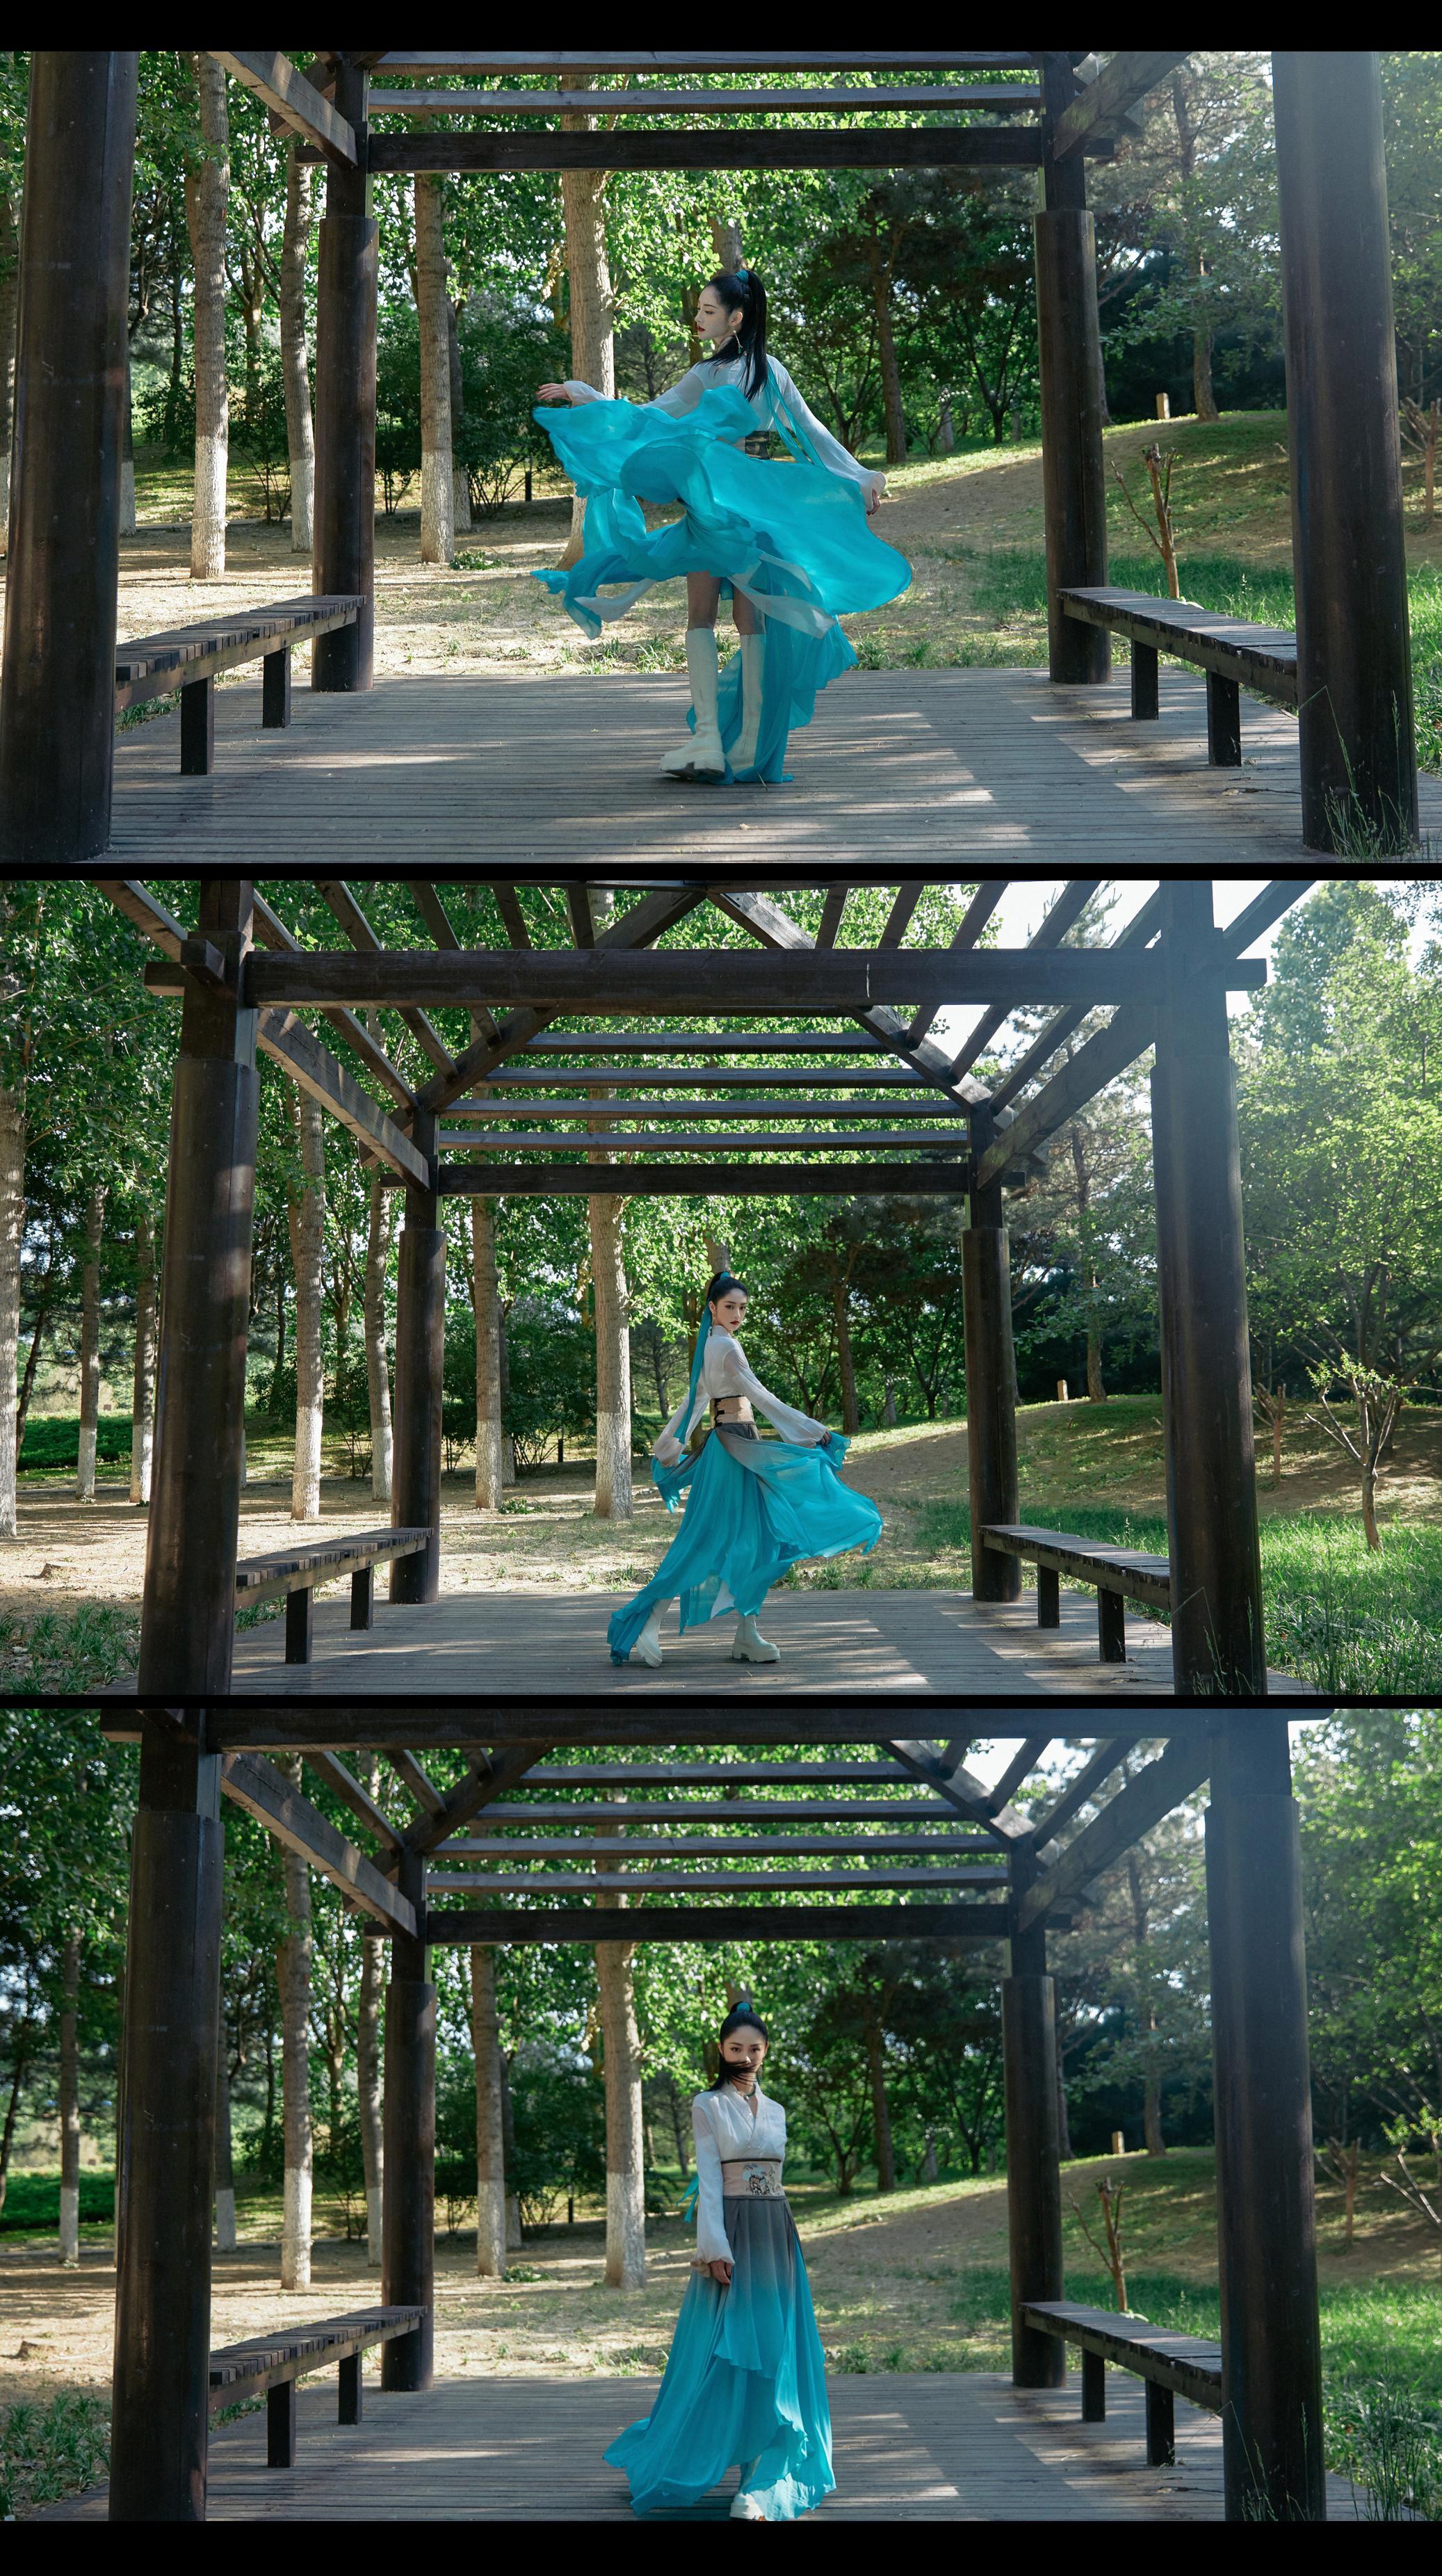 周洁琼蓝衫飘飘诠释国风魅力 水墨造型舞于林间斑驳光影,6